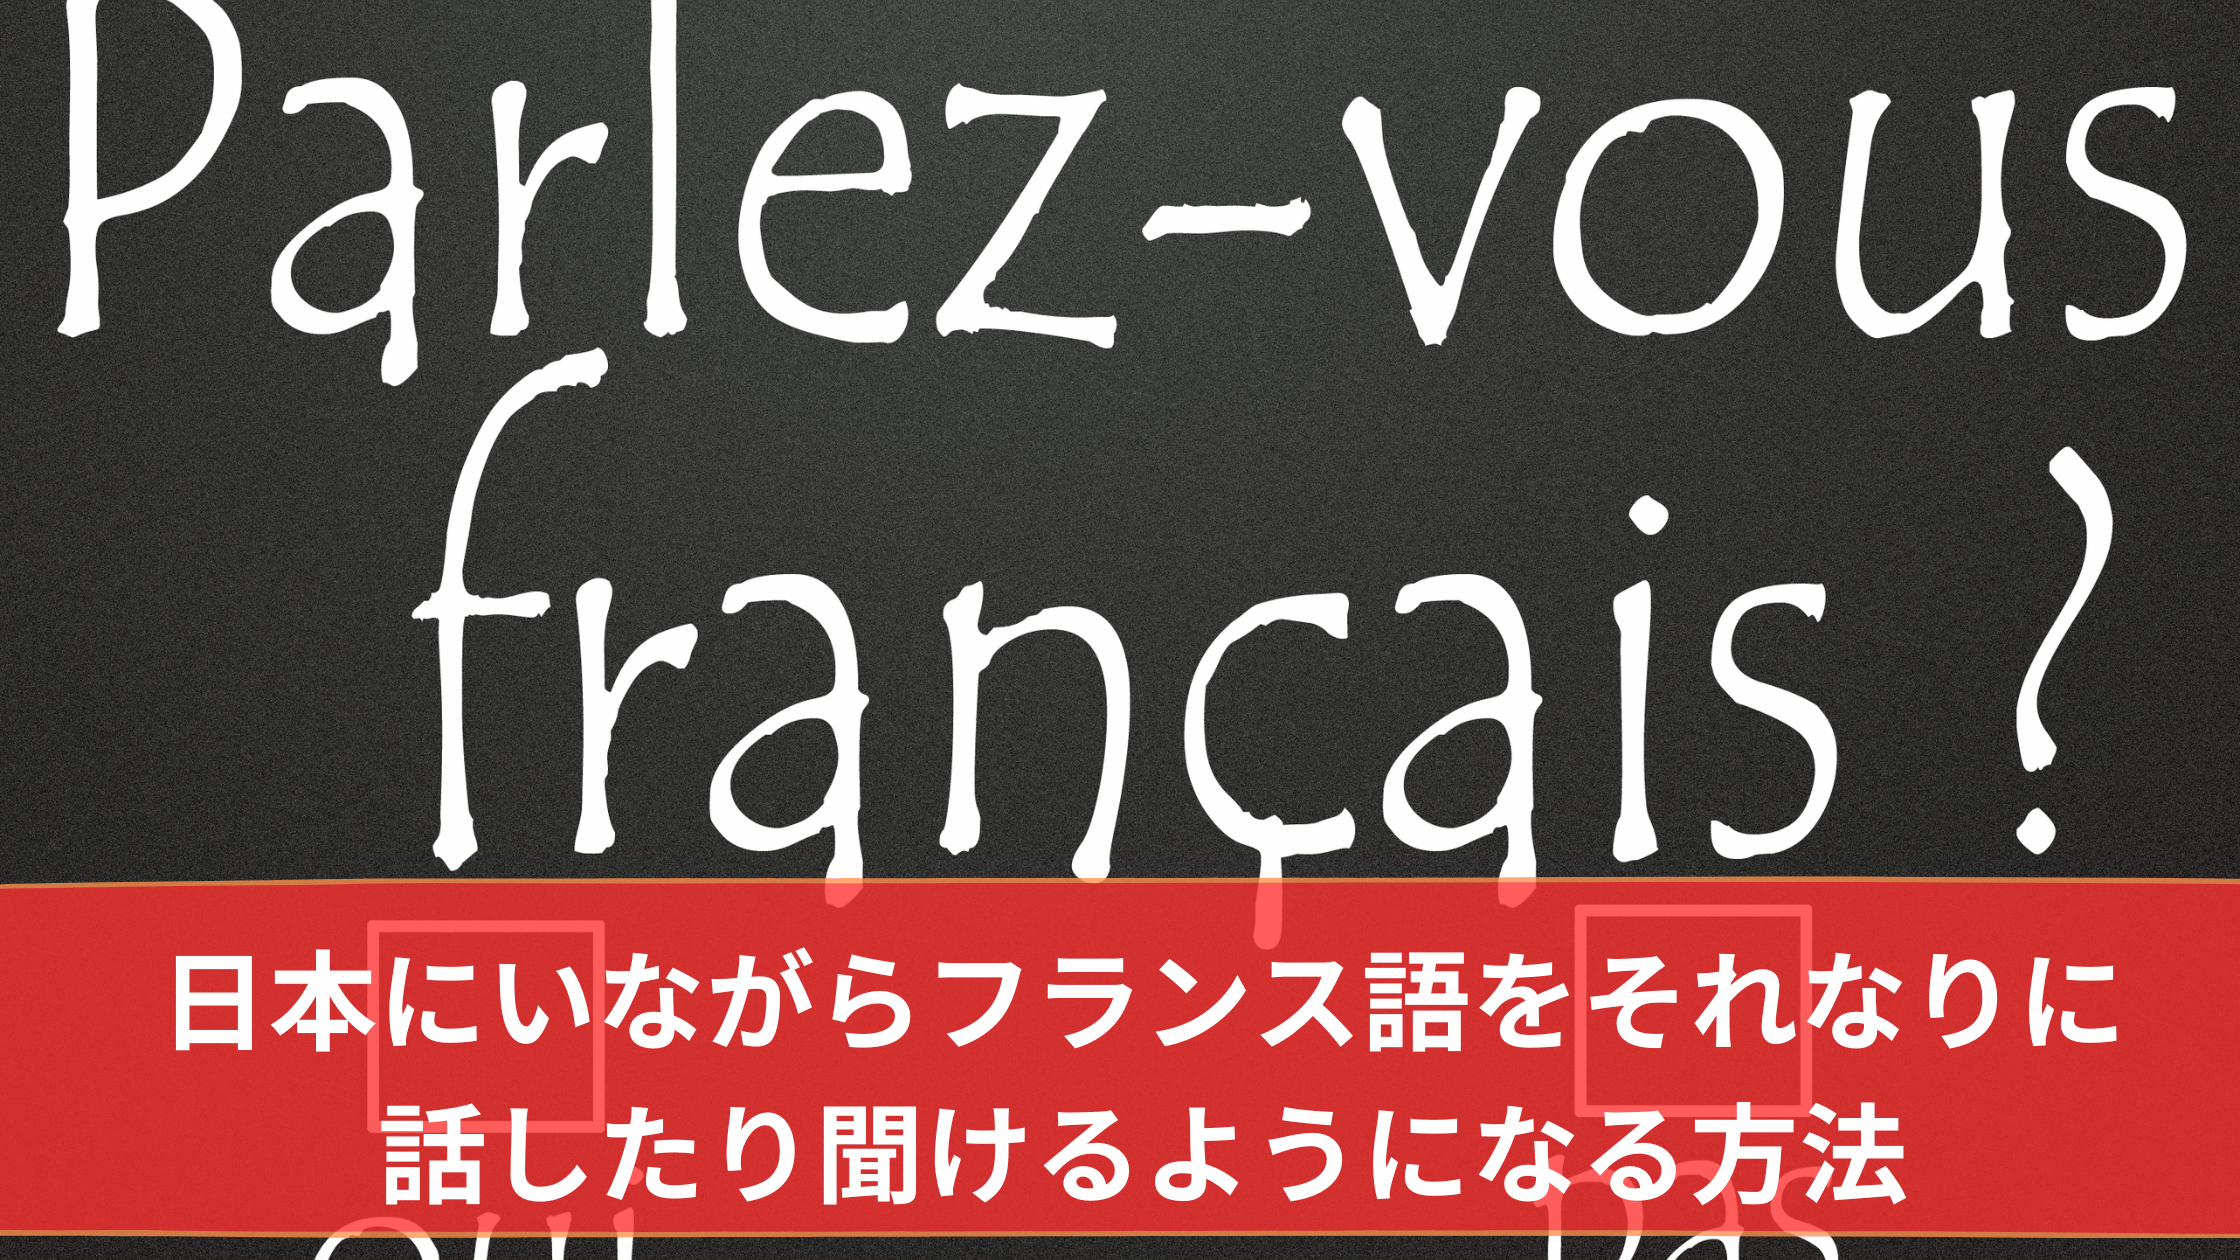 日本にいながらフランス語をそれなりに話したり聞けるようになる方法